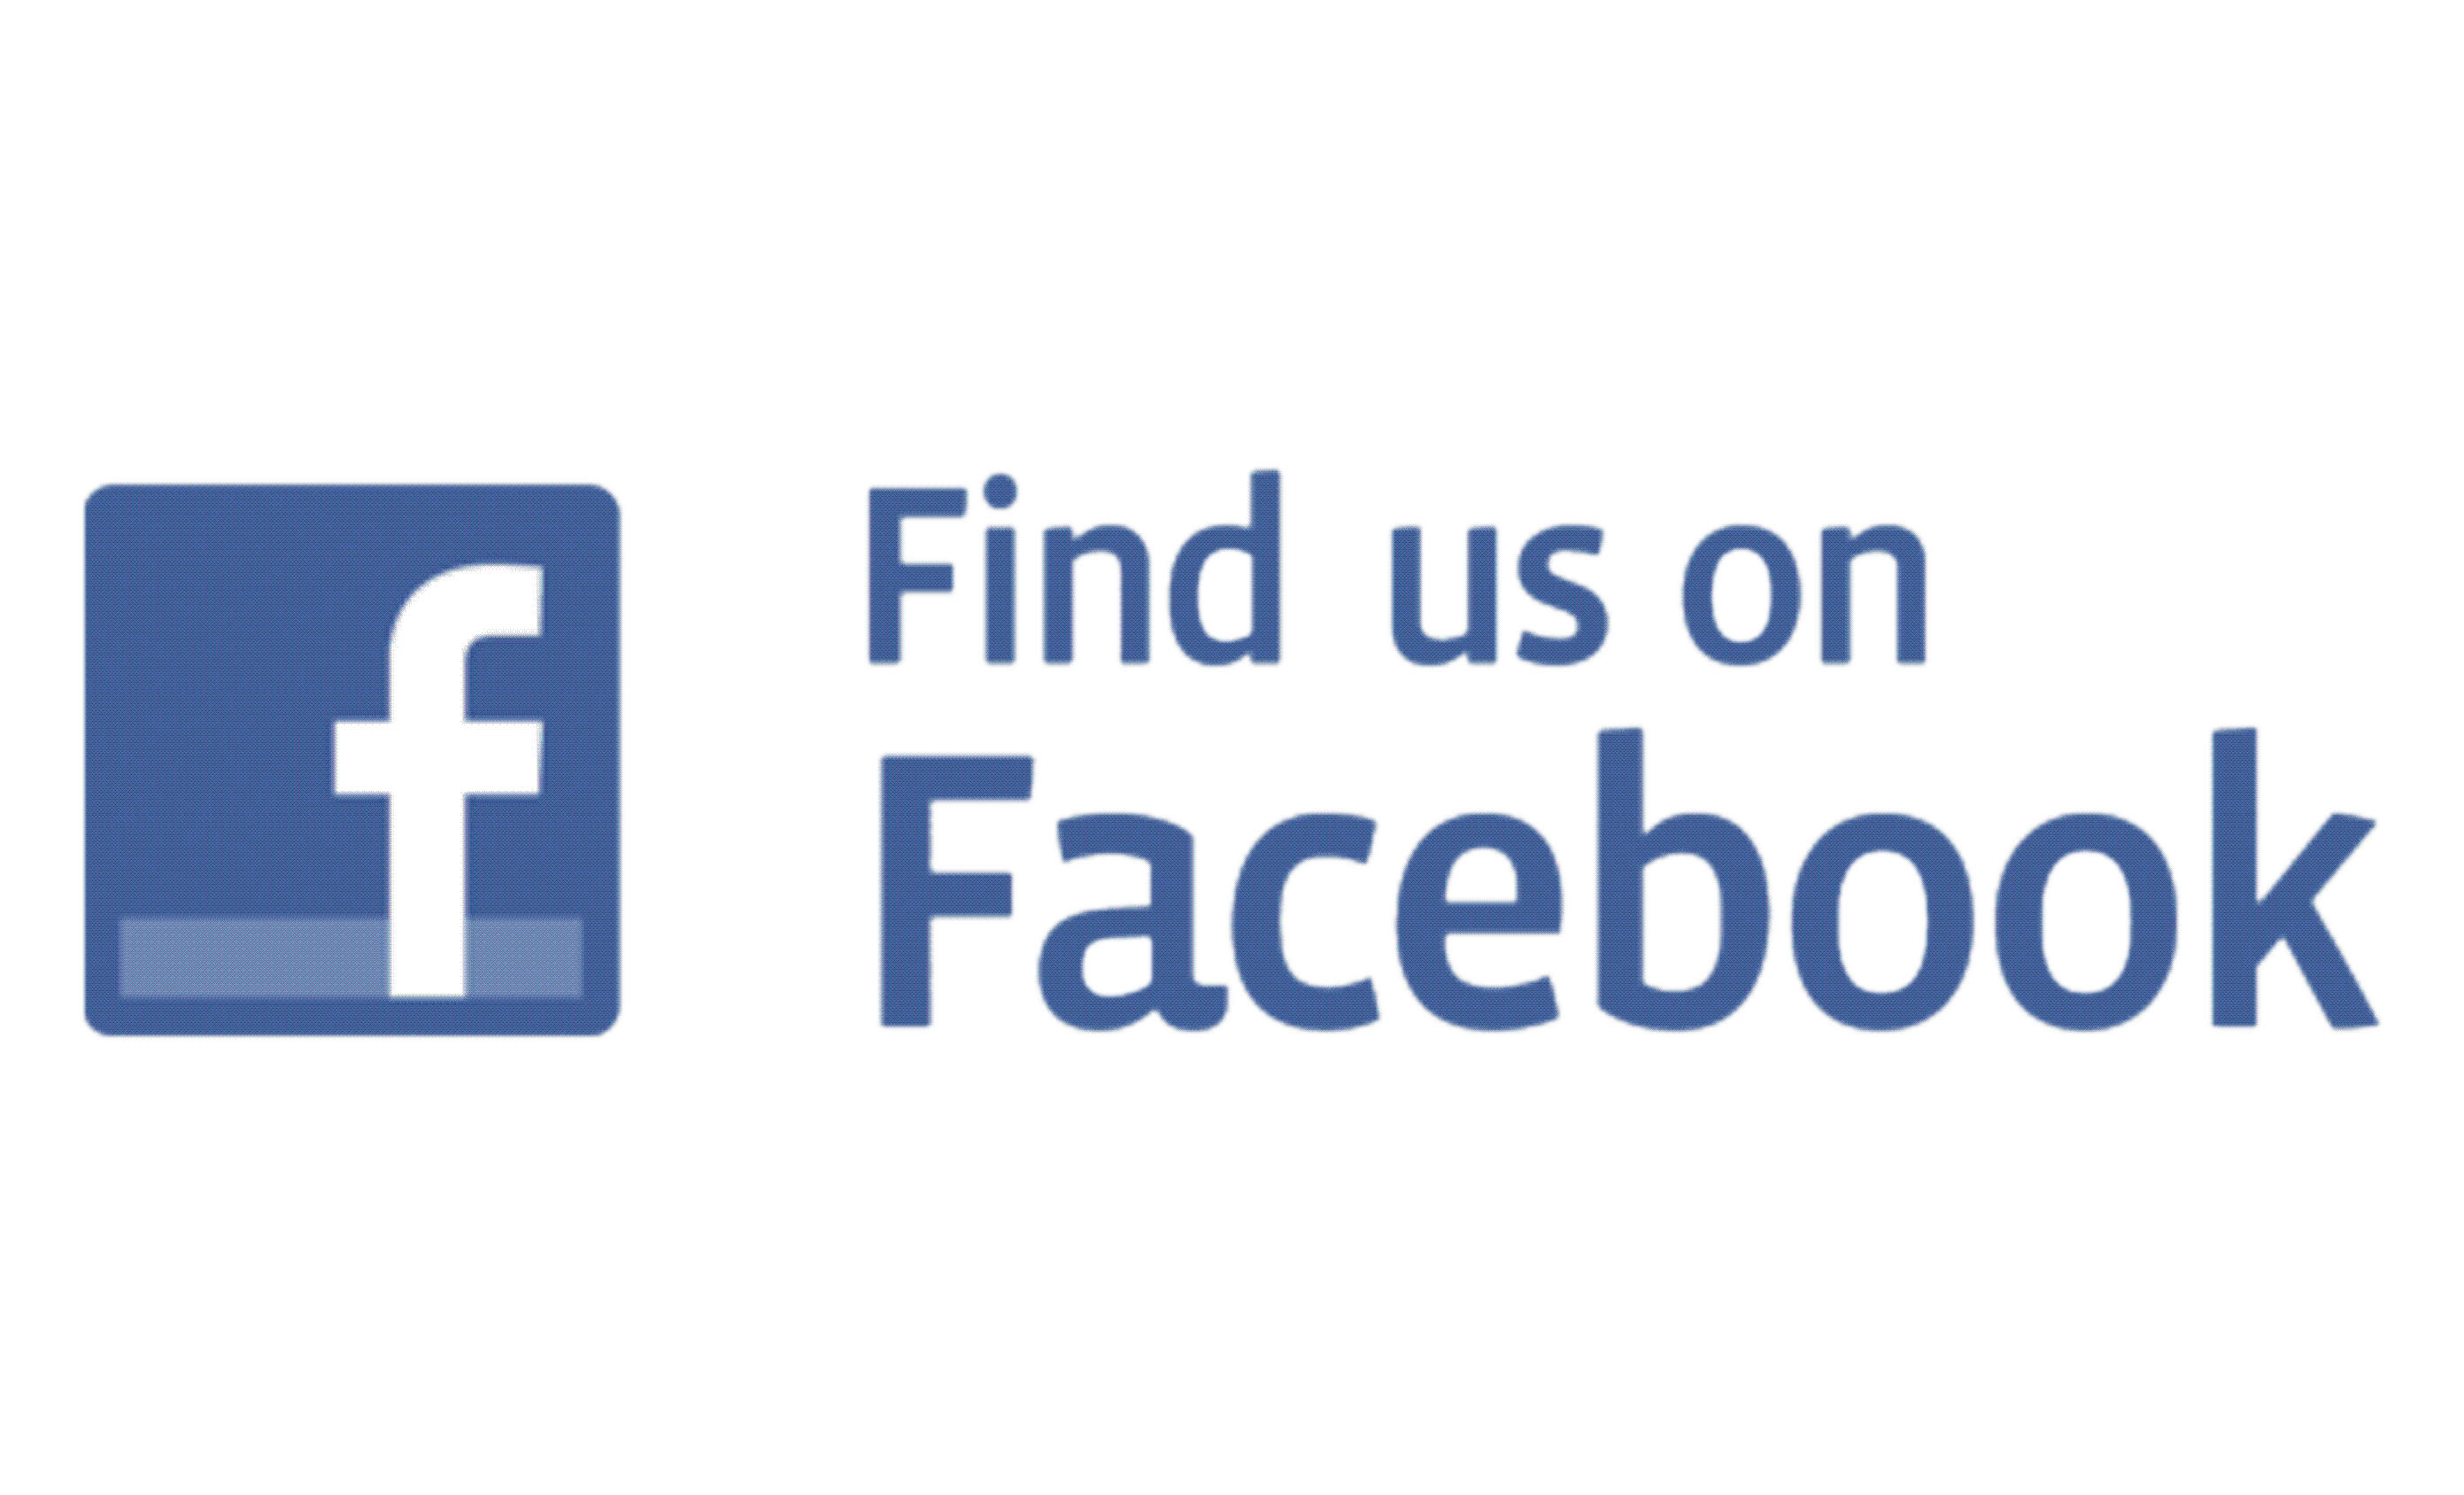 Visit Us On Facebook Logo - Find us on facebook Logos